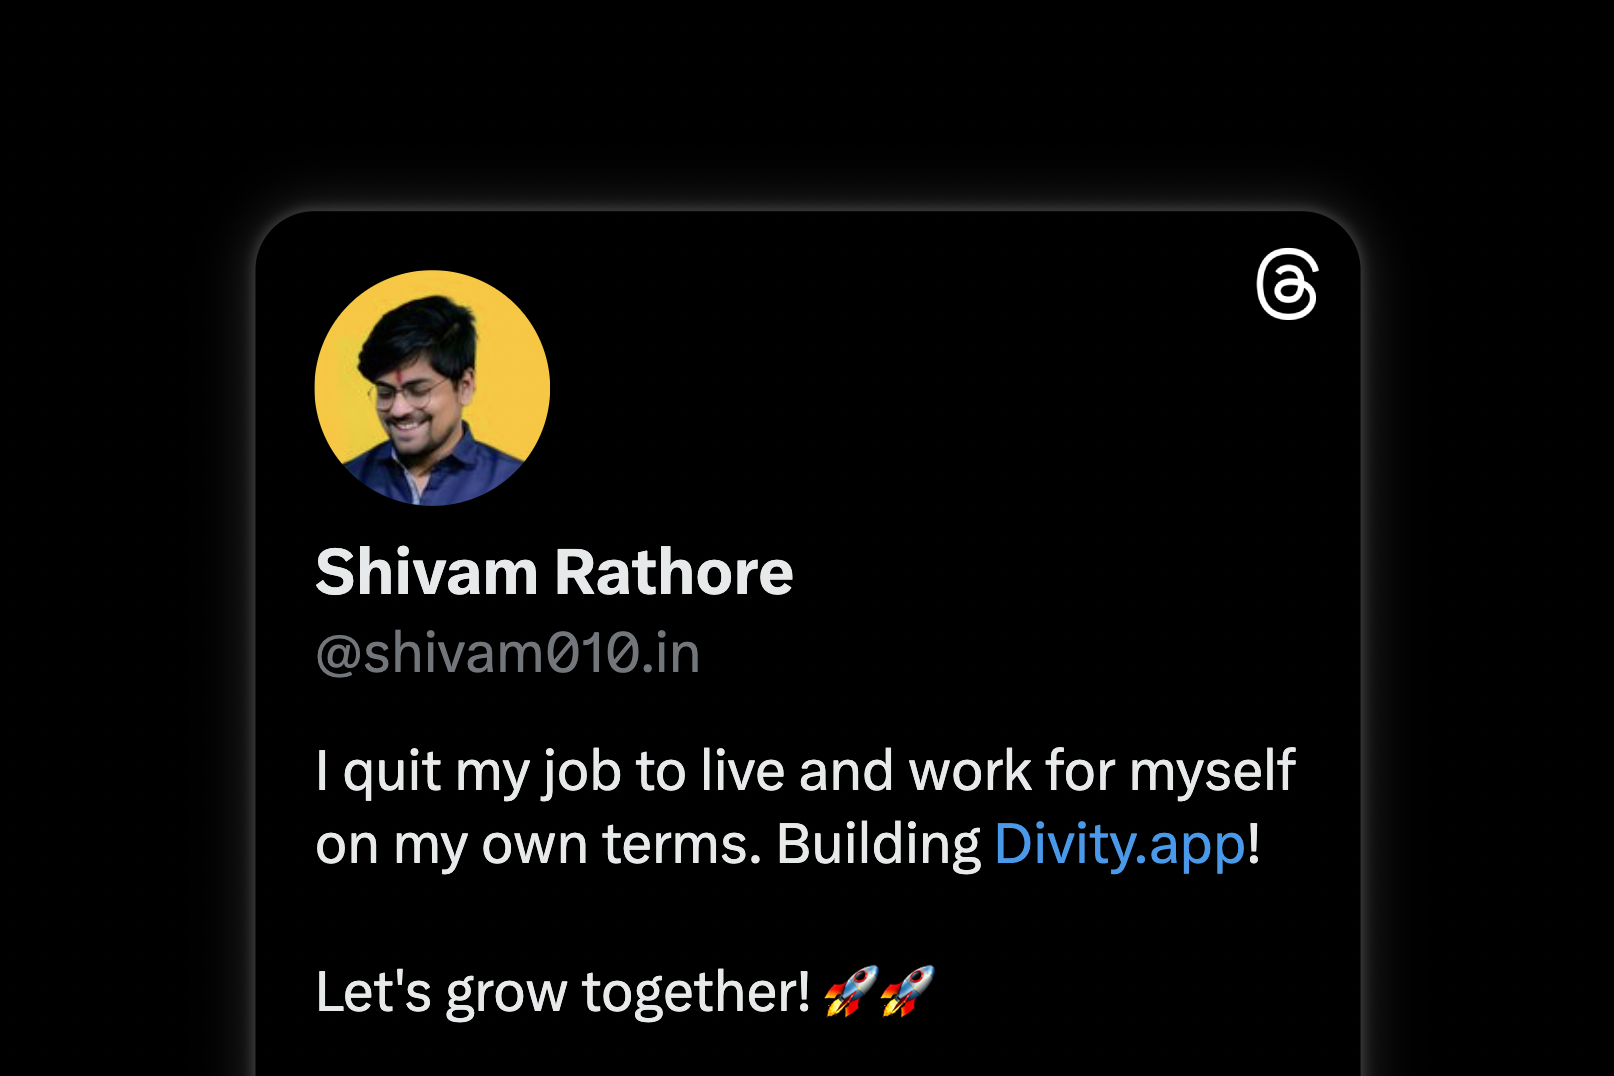 Shivam Rathore (shivam010.in) | Threads.net